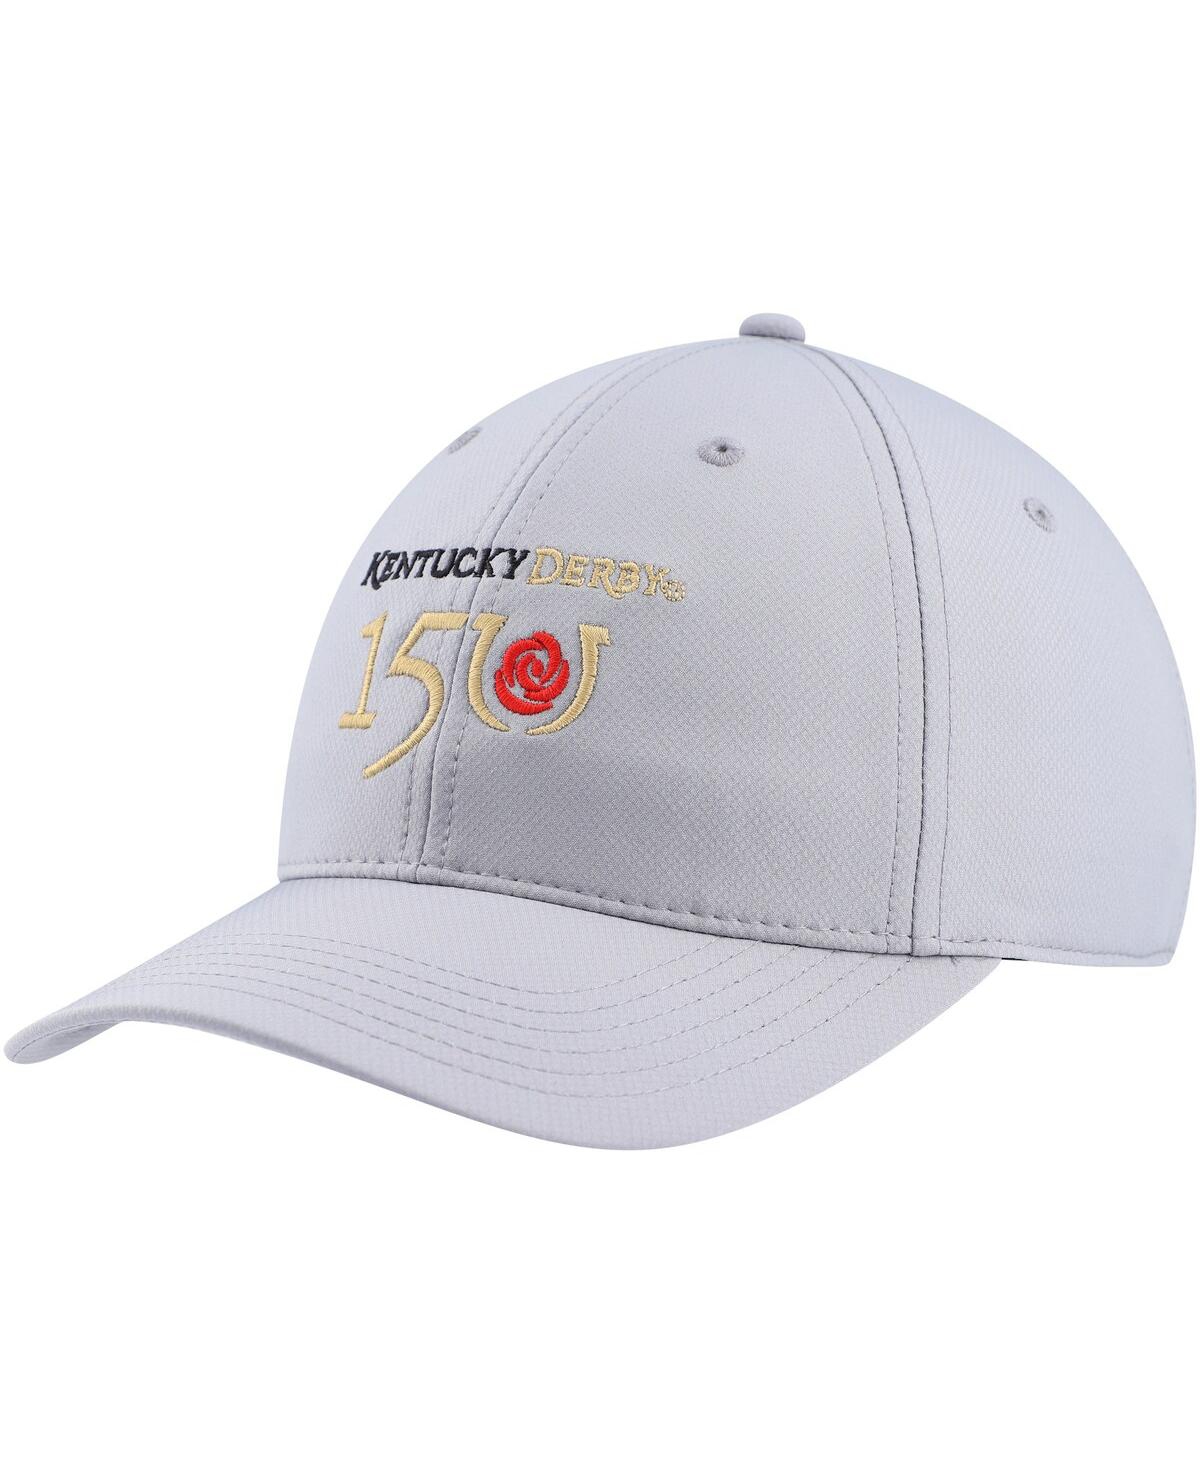 Shop Ahead Men's  Gray Kentucky Derby 150 Frio Adjustable Hat